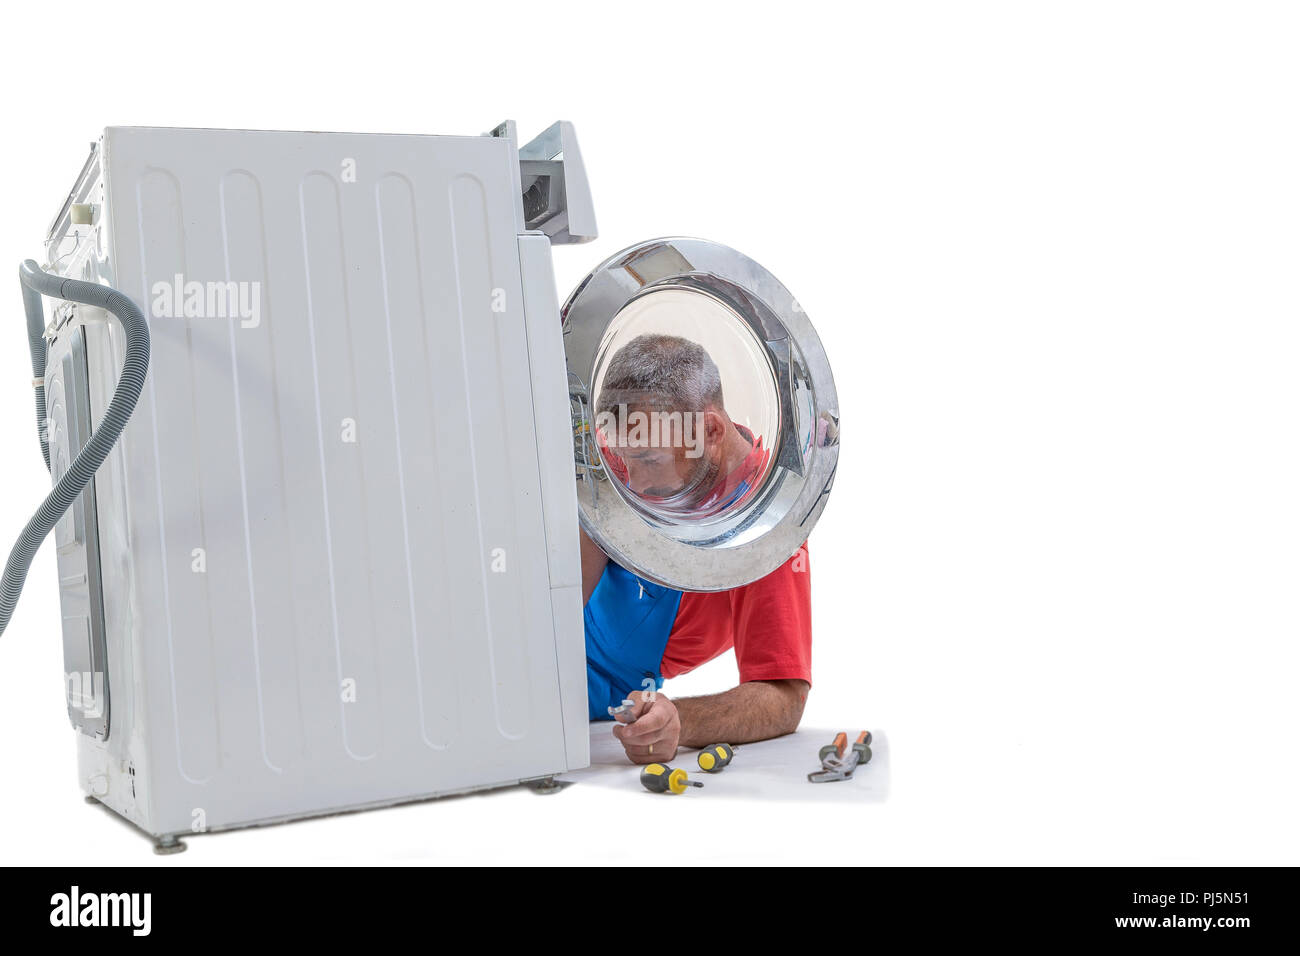 plumbing. Plumber repairing washing machine on white background Stock Photo